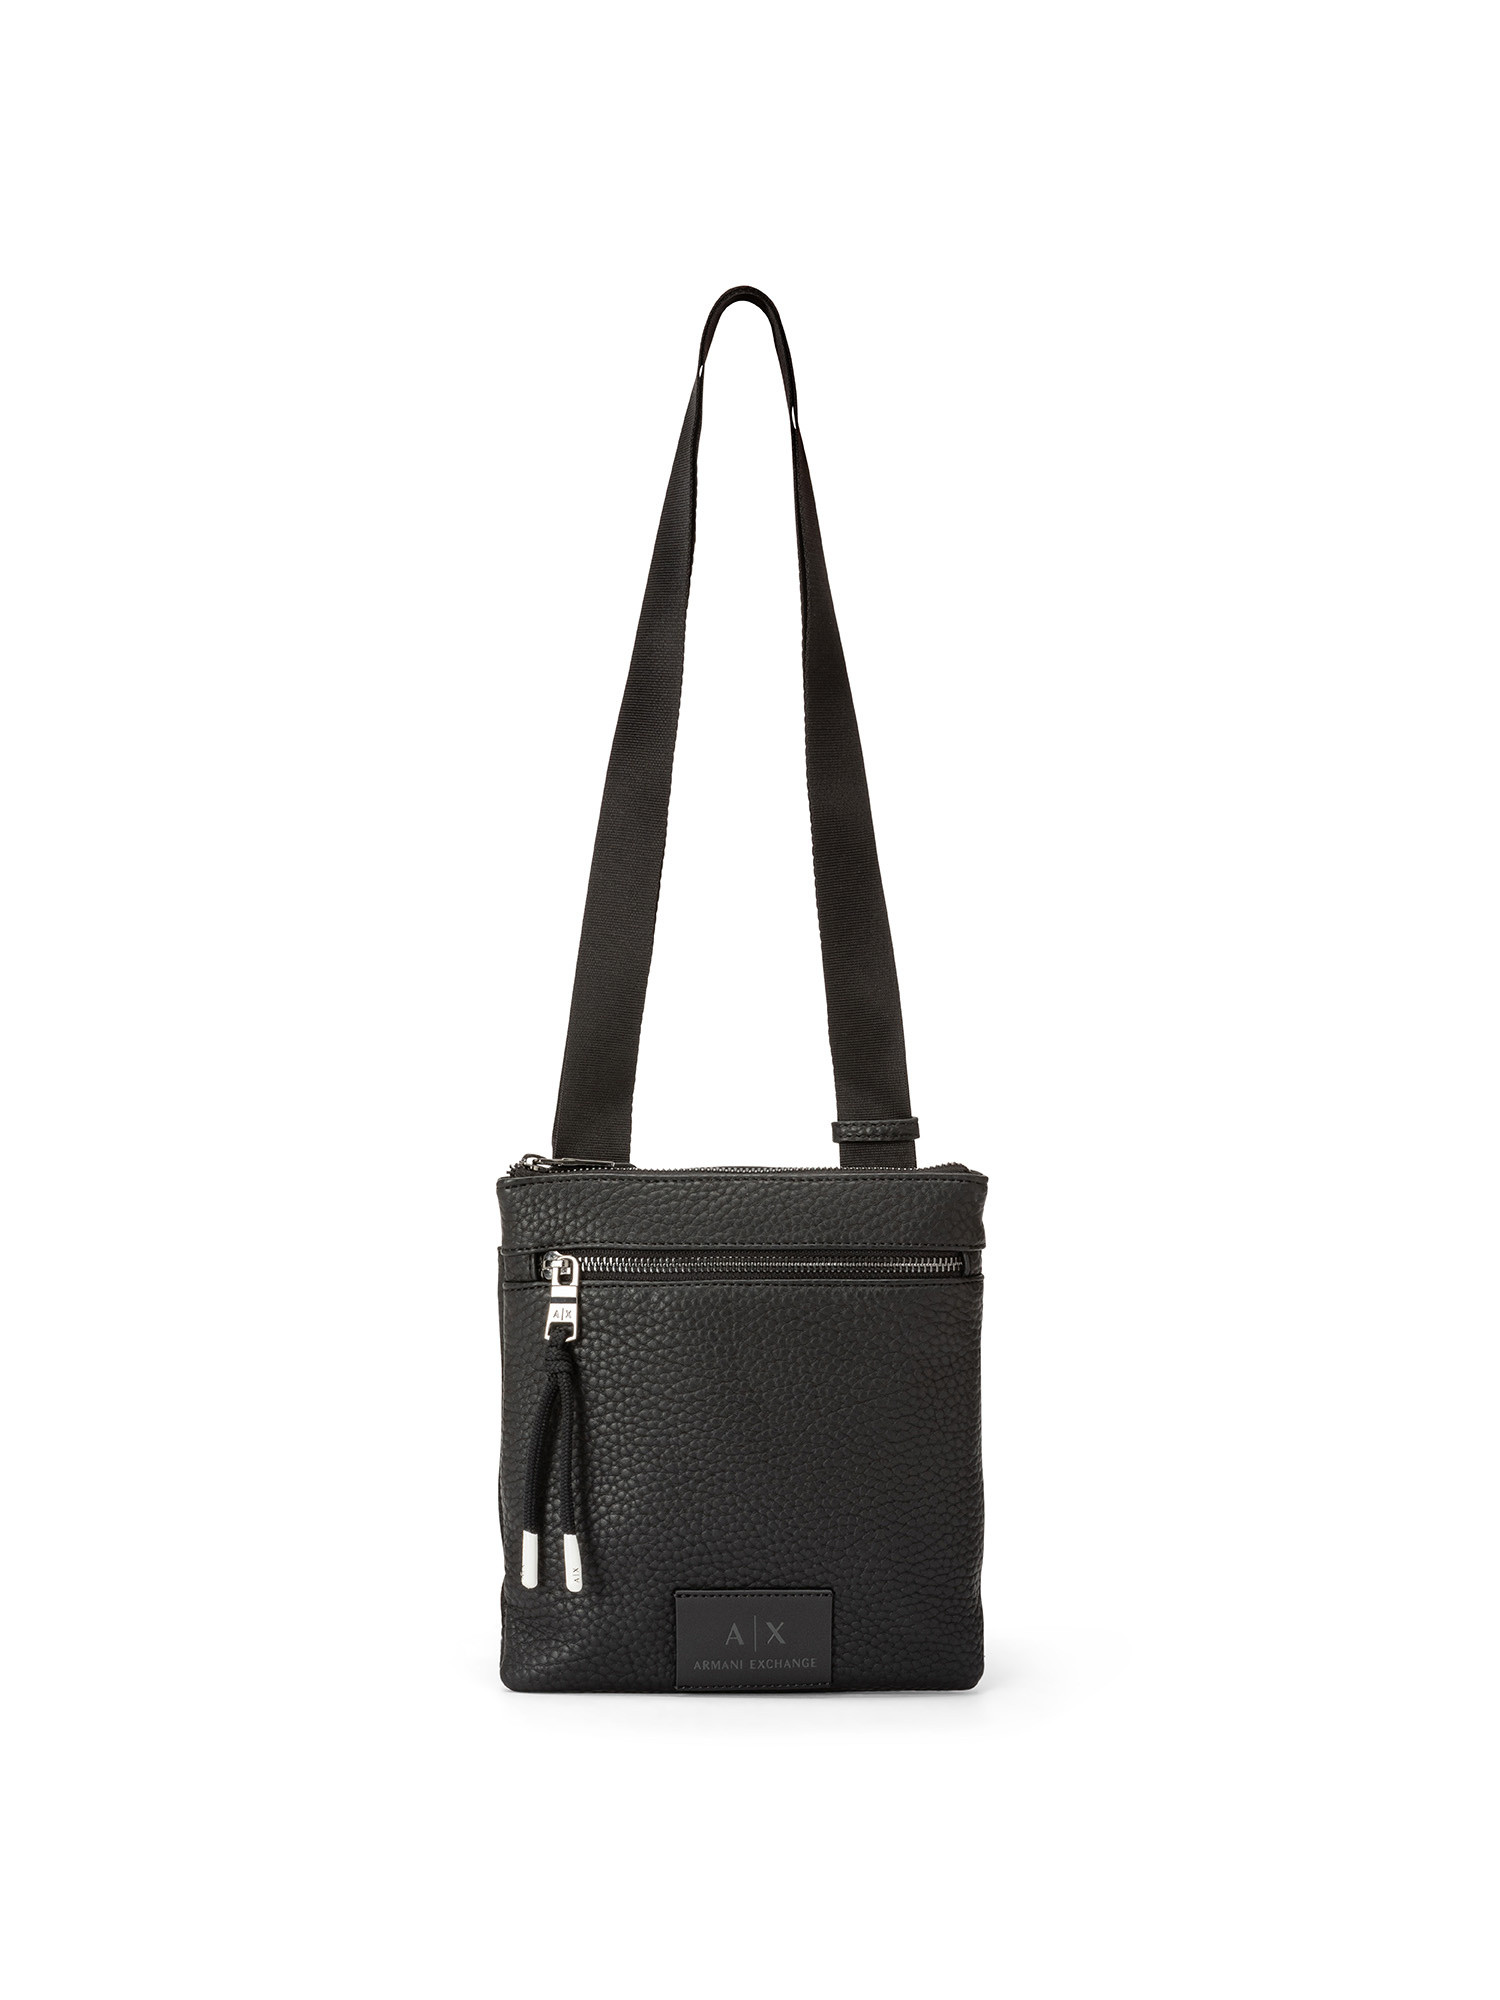 Armani Exchange - Shoulder bag with logo, Black, large image number 0